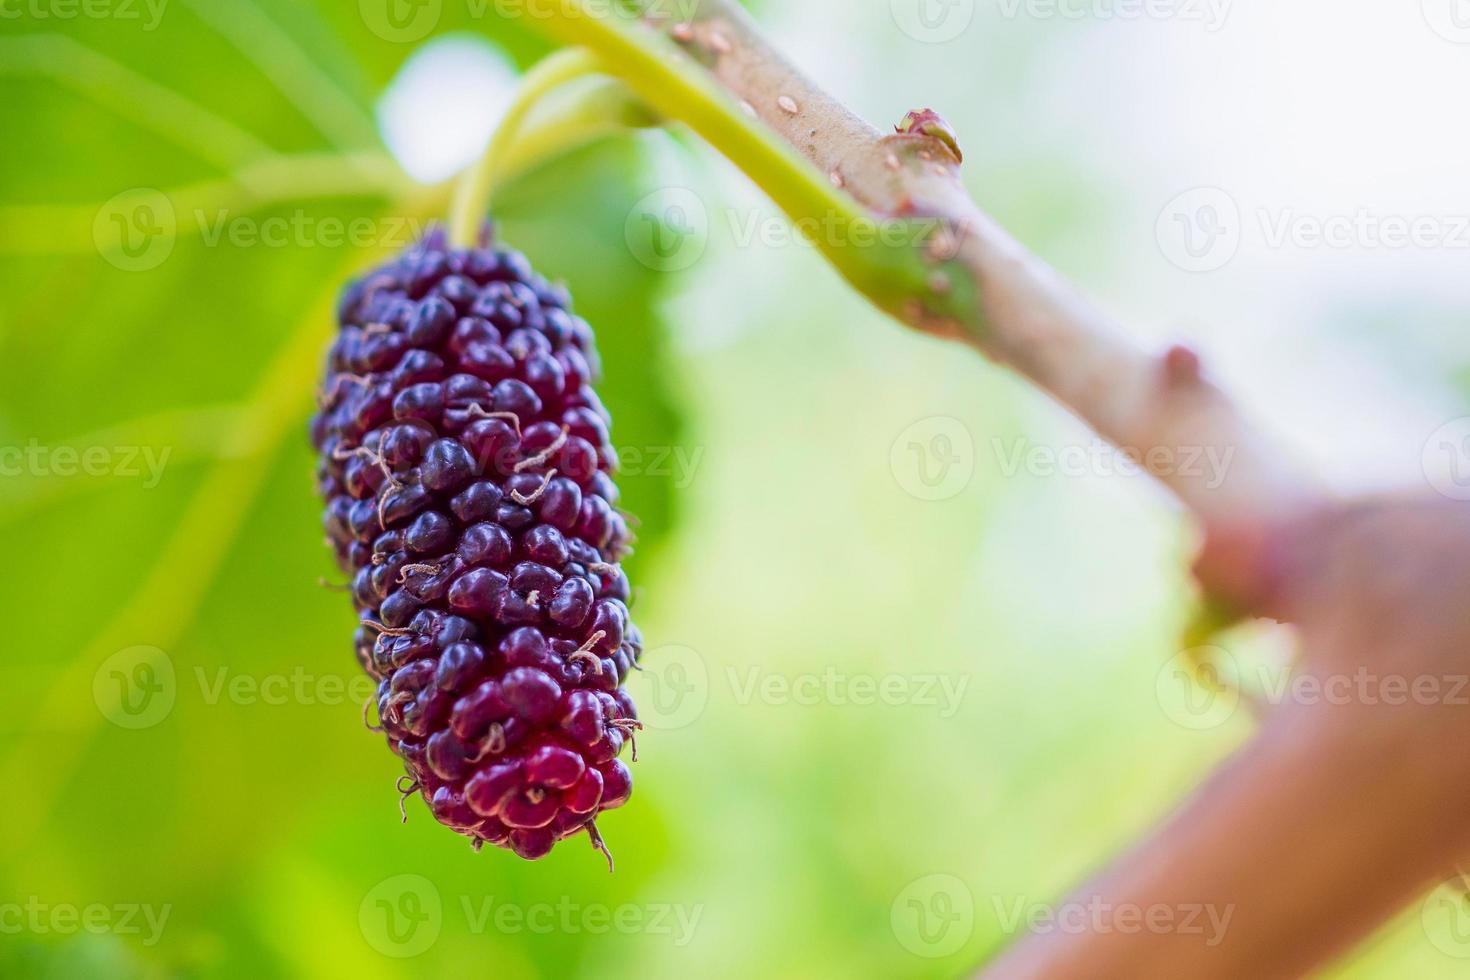 frutas frescas de amora vermelha no galho de árvore foto